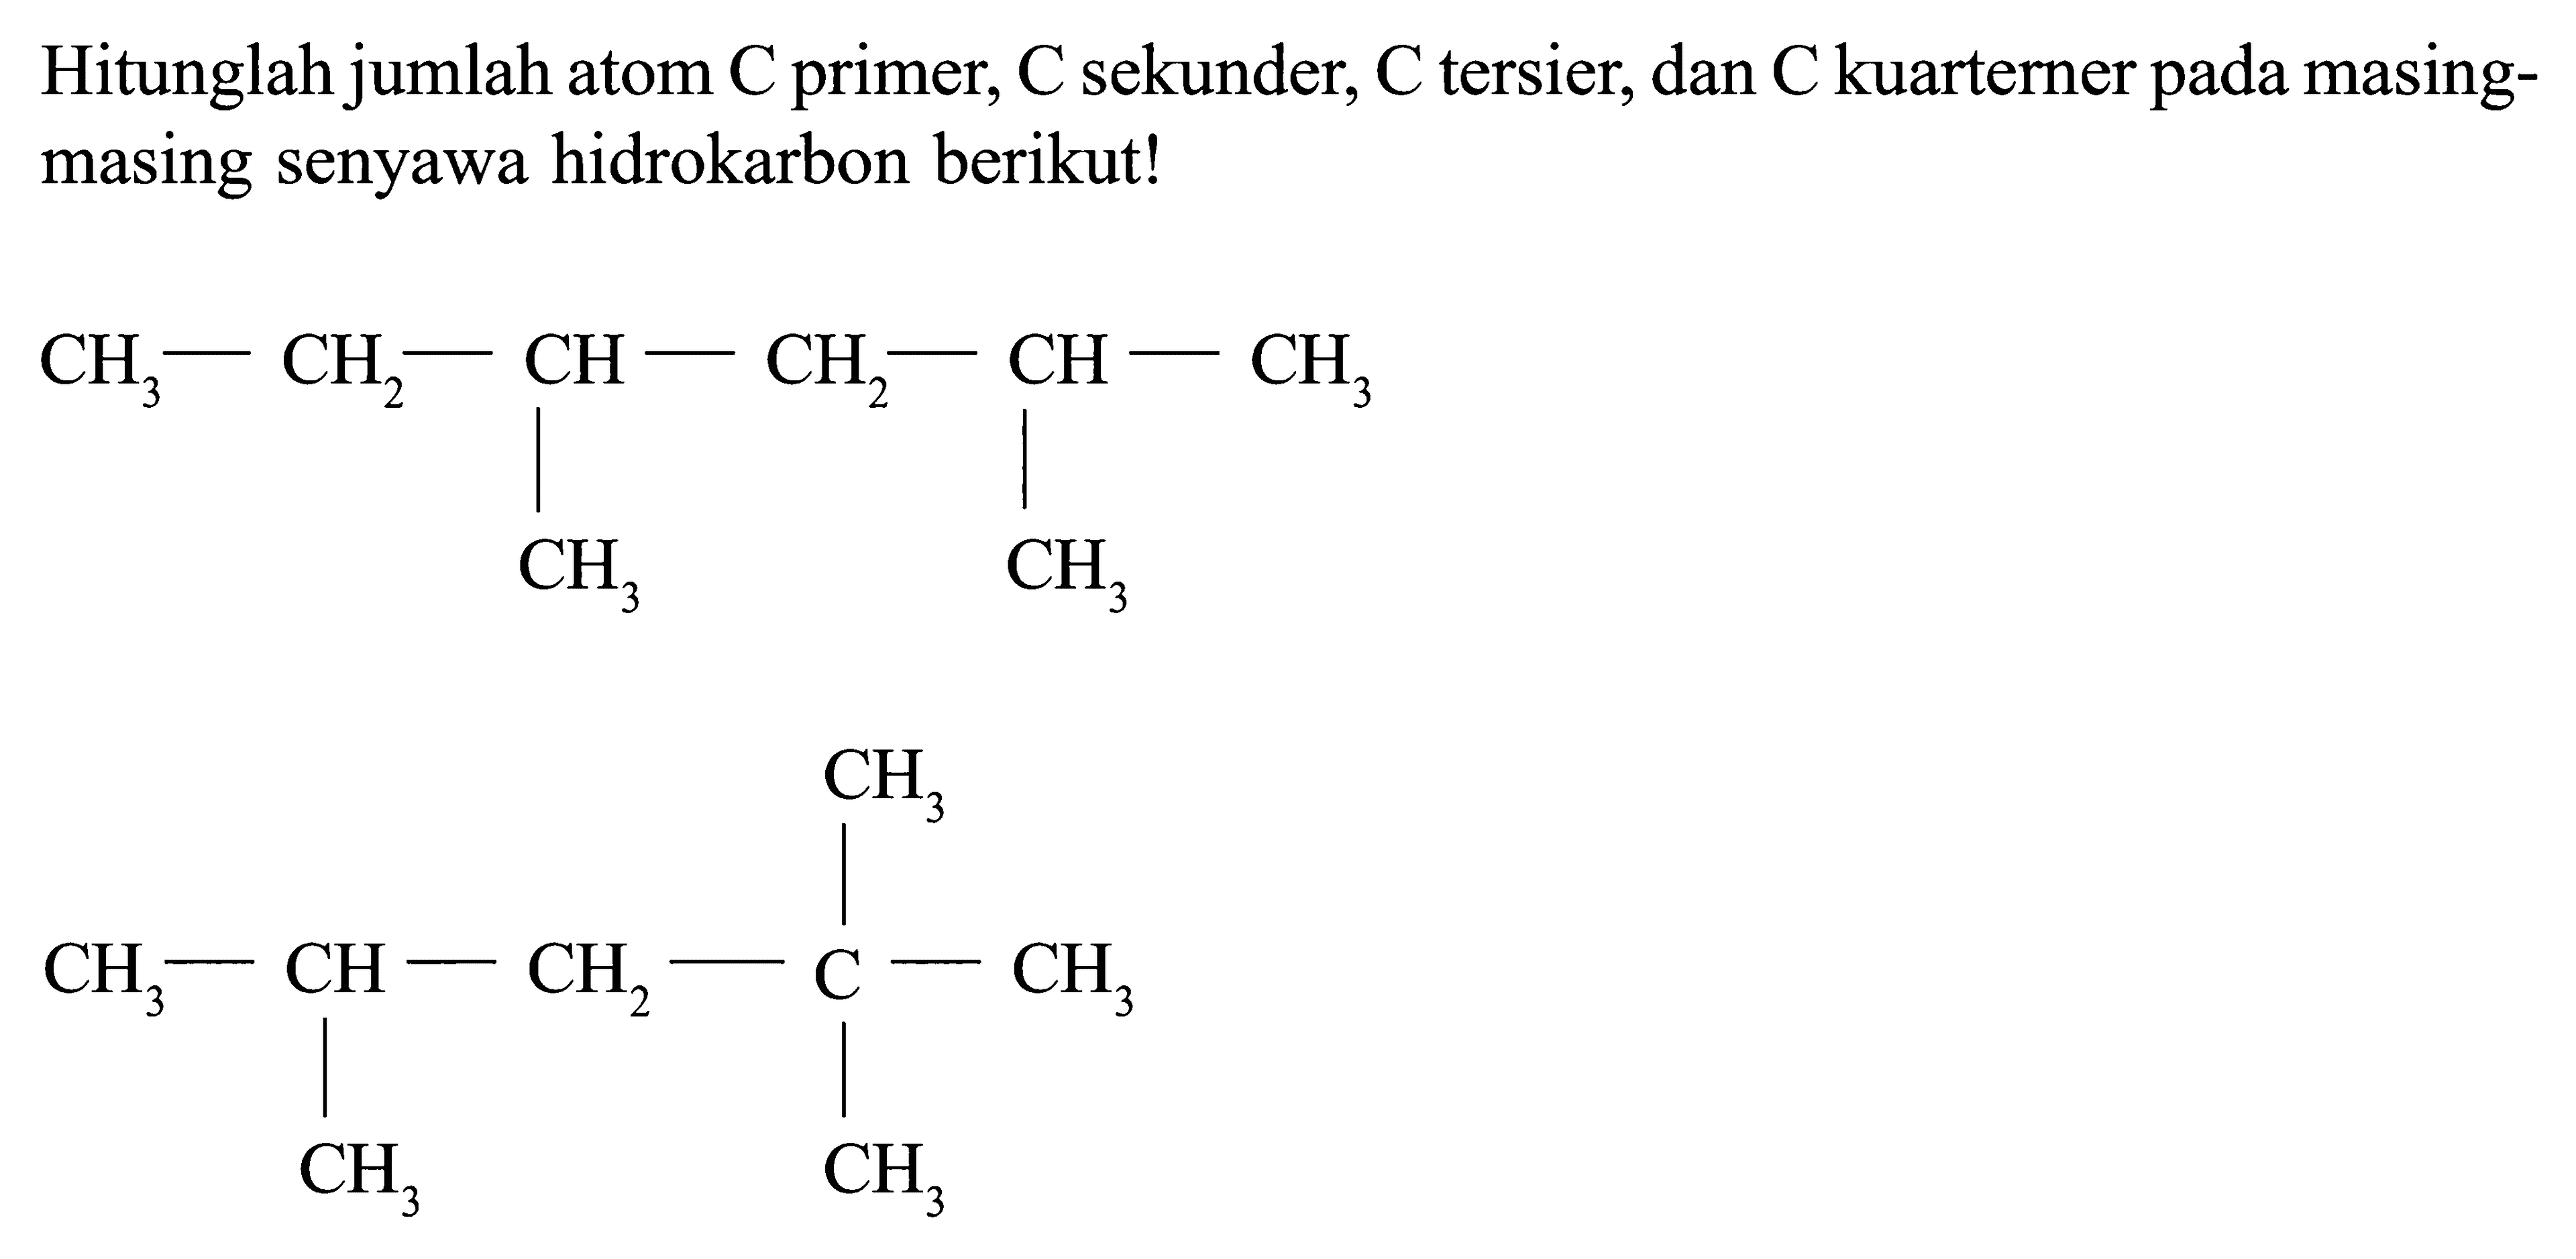 Hitunglah jumlah atom C primer, C sekunder, C tersier, dan C kuarterner masing- masing senyawa hidrokarbon berikut! CH3 - CH2 - CH - CH2 - CH - CH3 CH3 CH3 CH3 CH3 - CH - CH2 - C - CH3 CH3 CH3